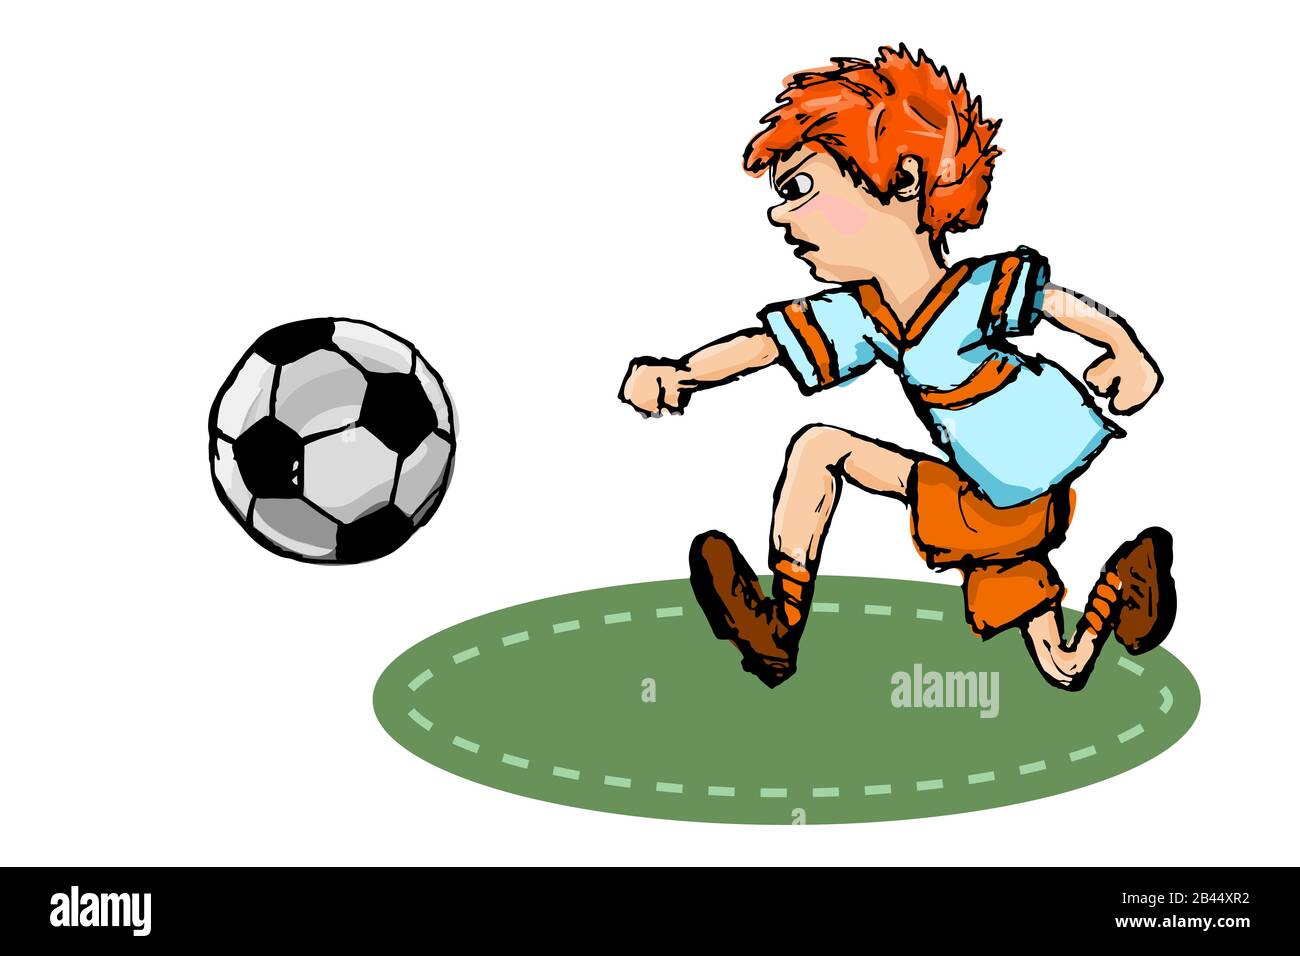 Süßer Junge, der Fußball spielt, isoliert auf weißem Hintergrund. Handgezogener kleiner Junge in einer Fußballuniform mit Fußballball tritt auf den Rasen. Bestandsvektor Stock Vektor